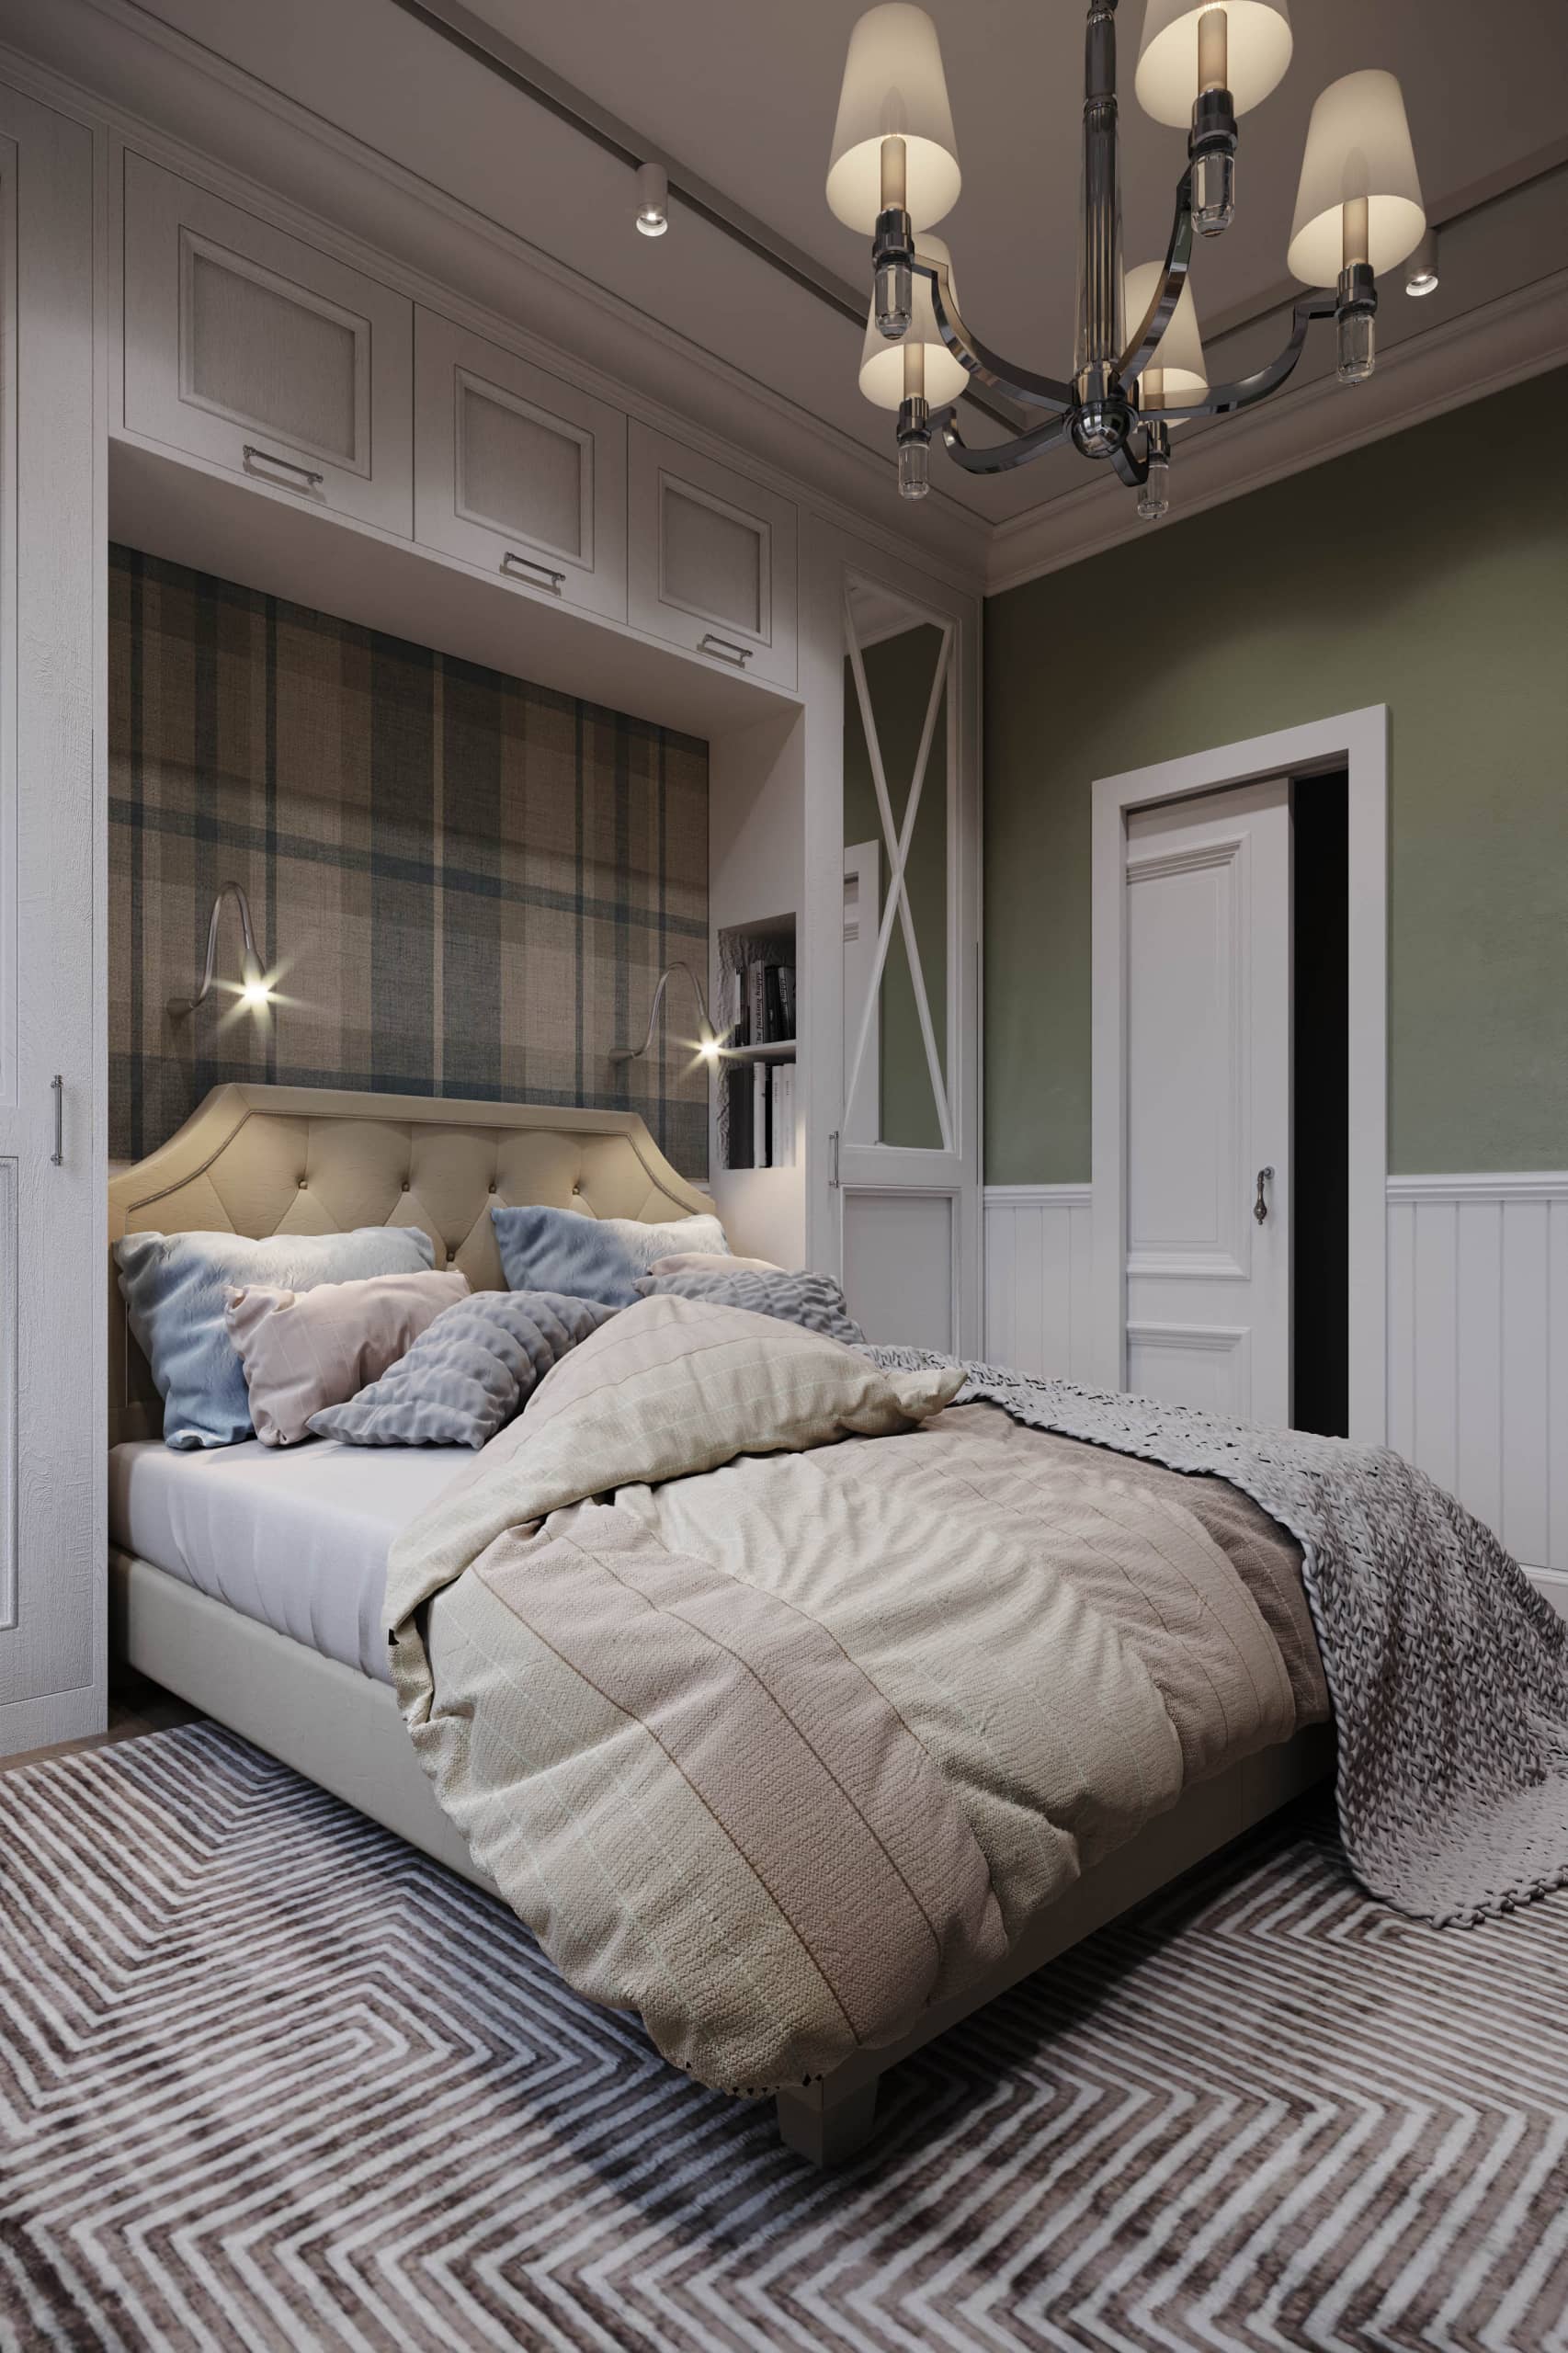 Оформление интерьера спальни в скандинавском стиле. Фото № 60185.